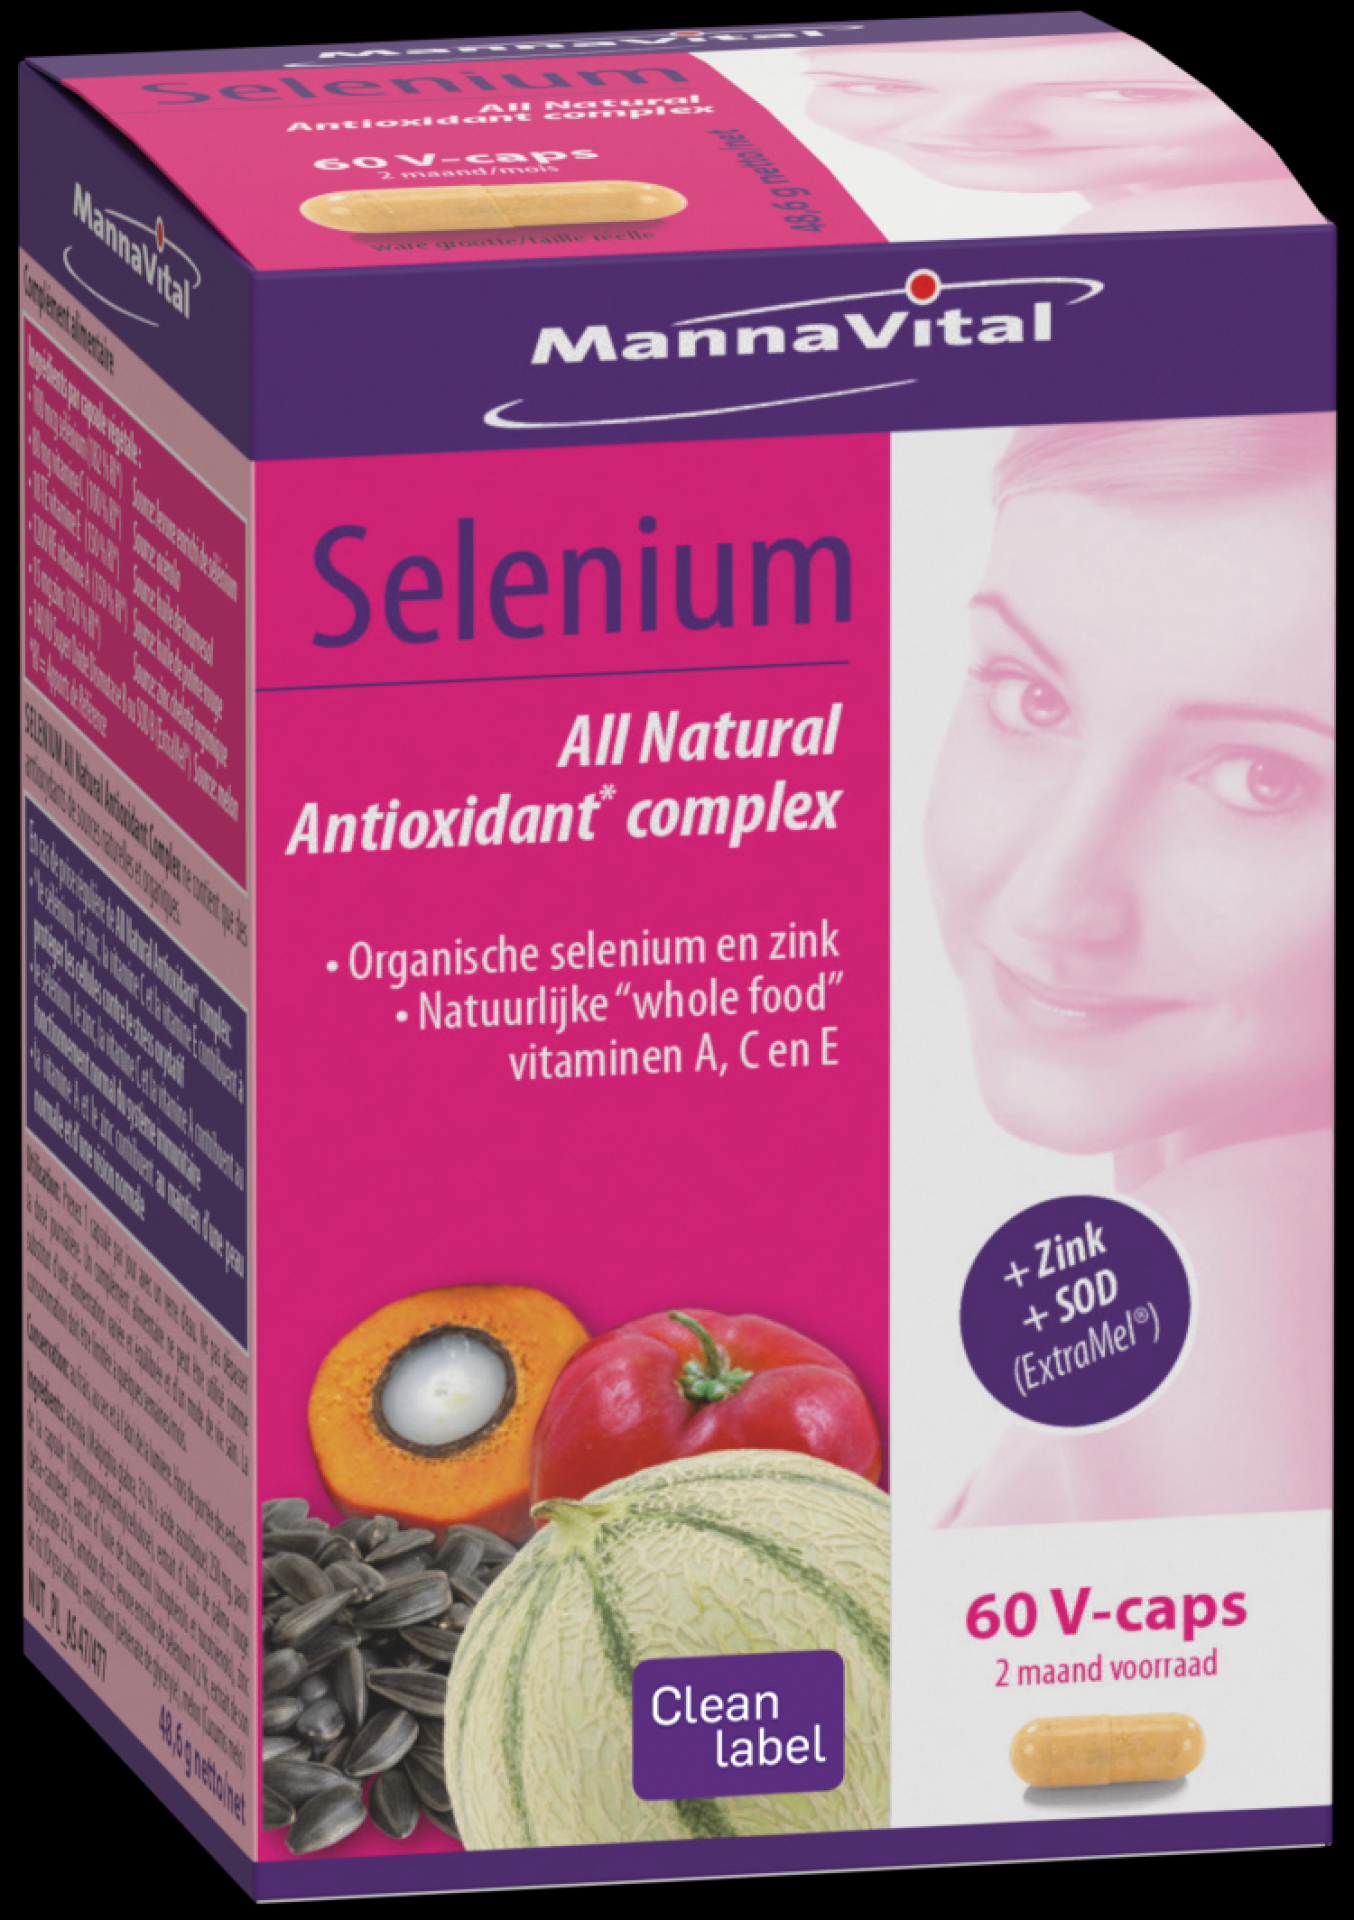 Selenium all natural antioxidant complex + zink & sodium